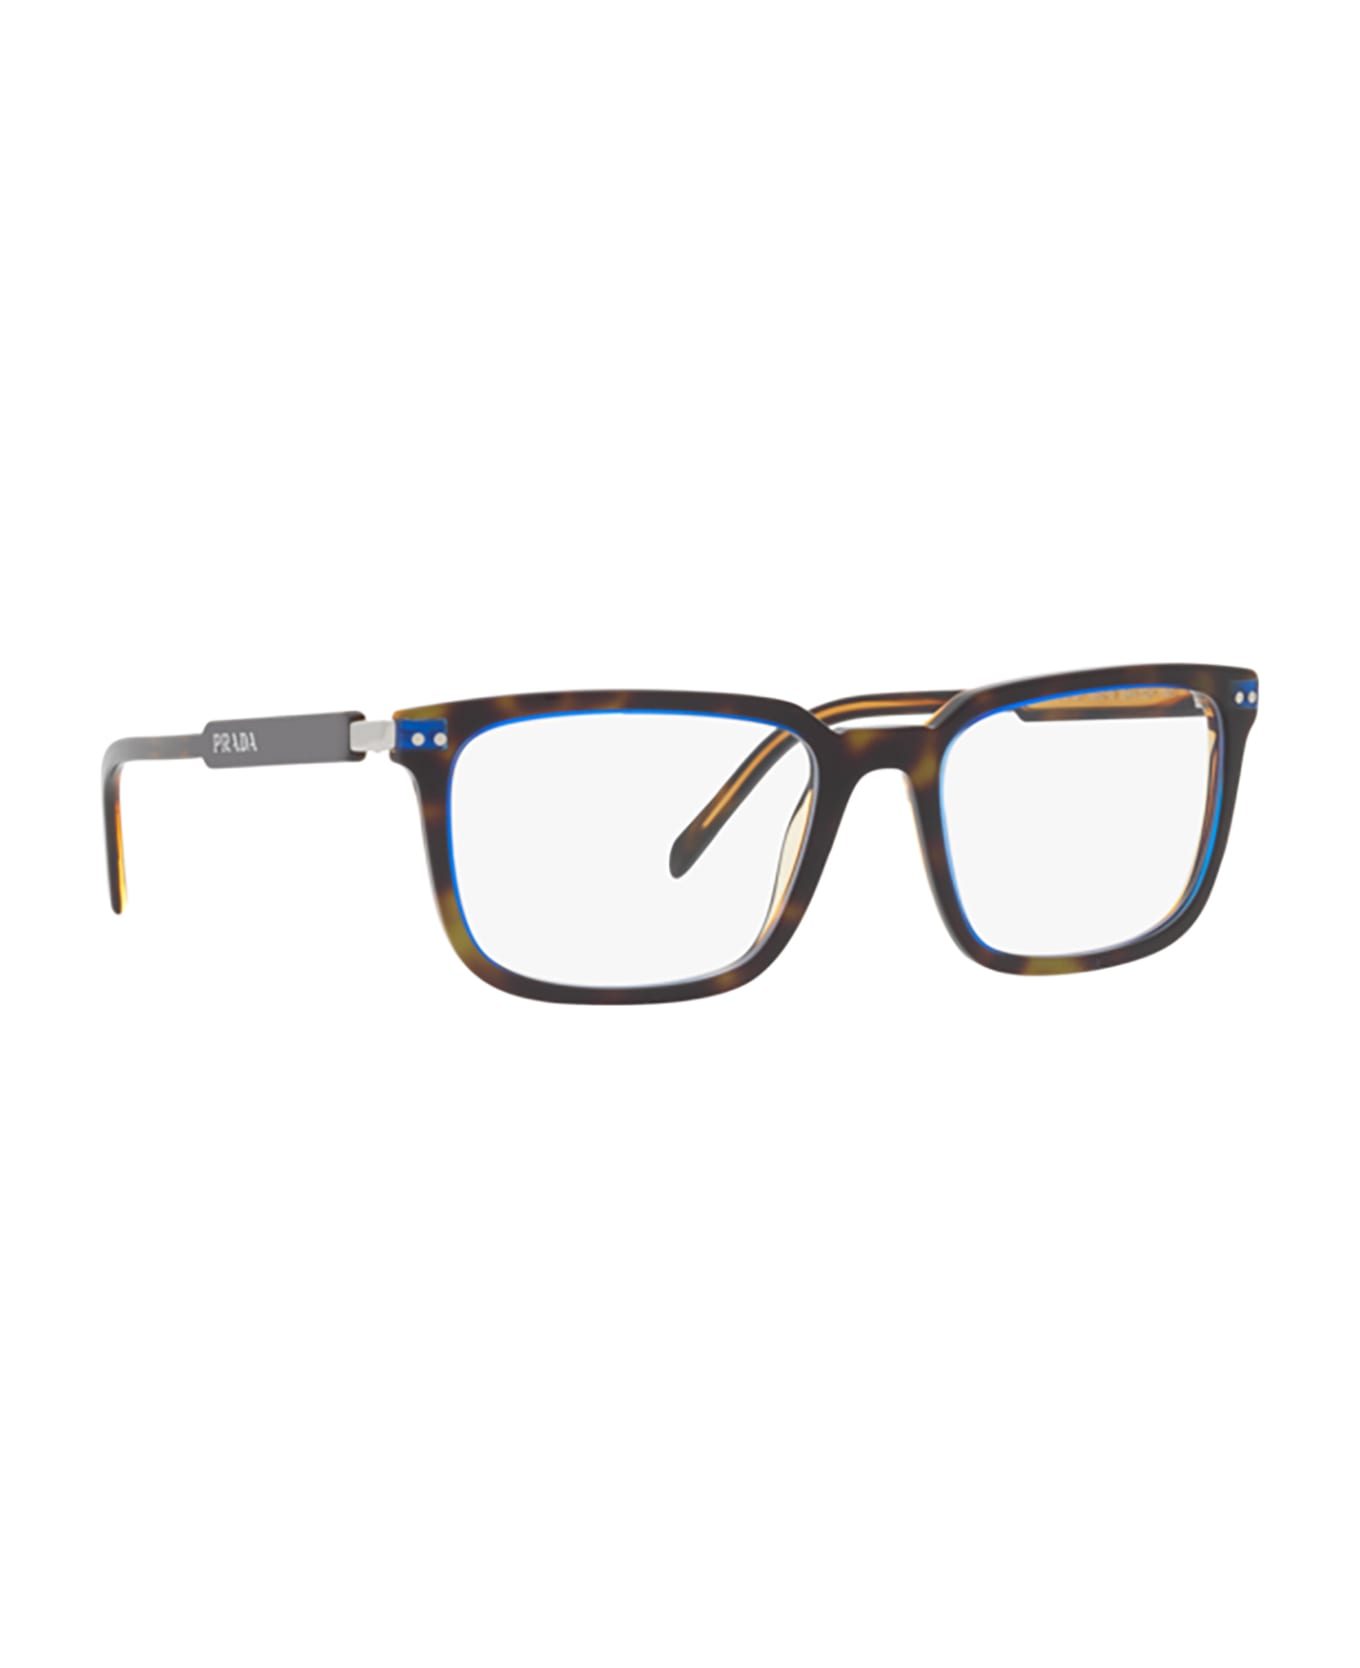 Prada Eyewear Pr 13yv Denim Tortoise Glasses - Denim Tortoise